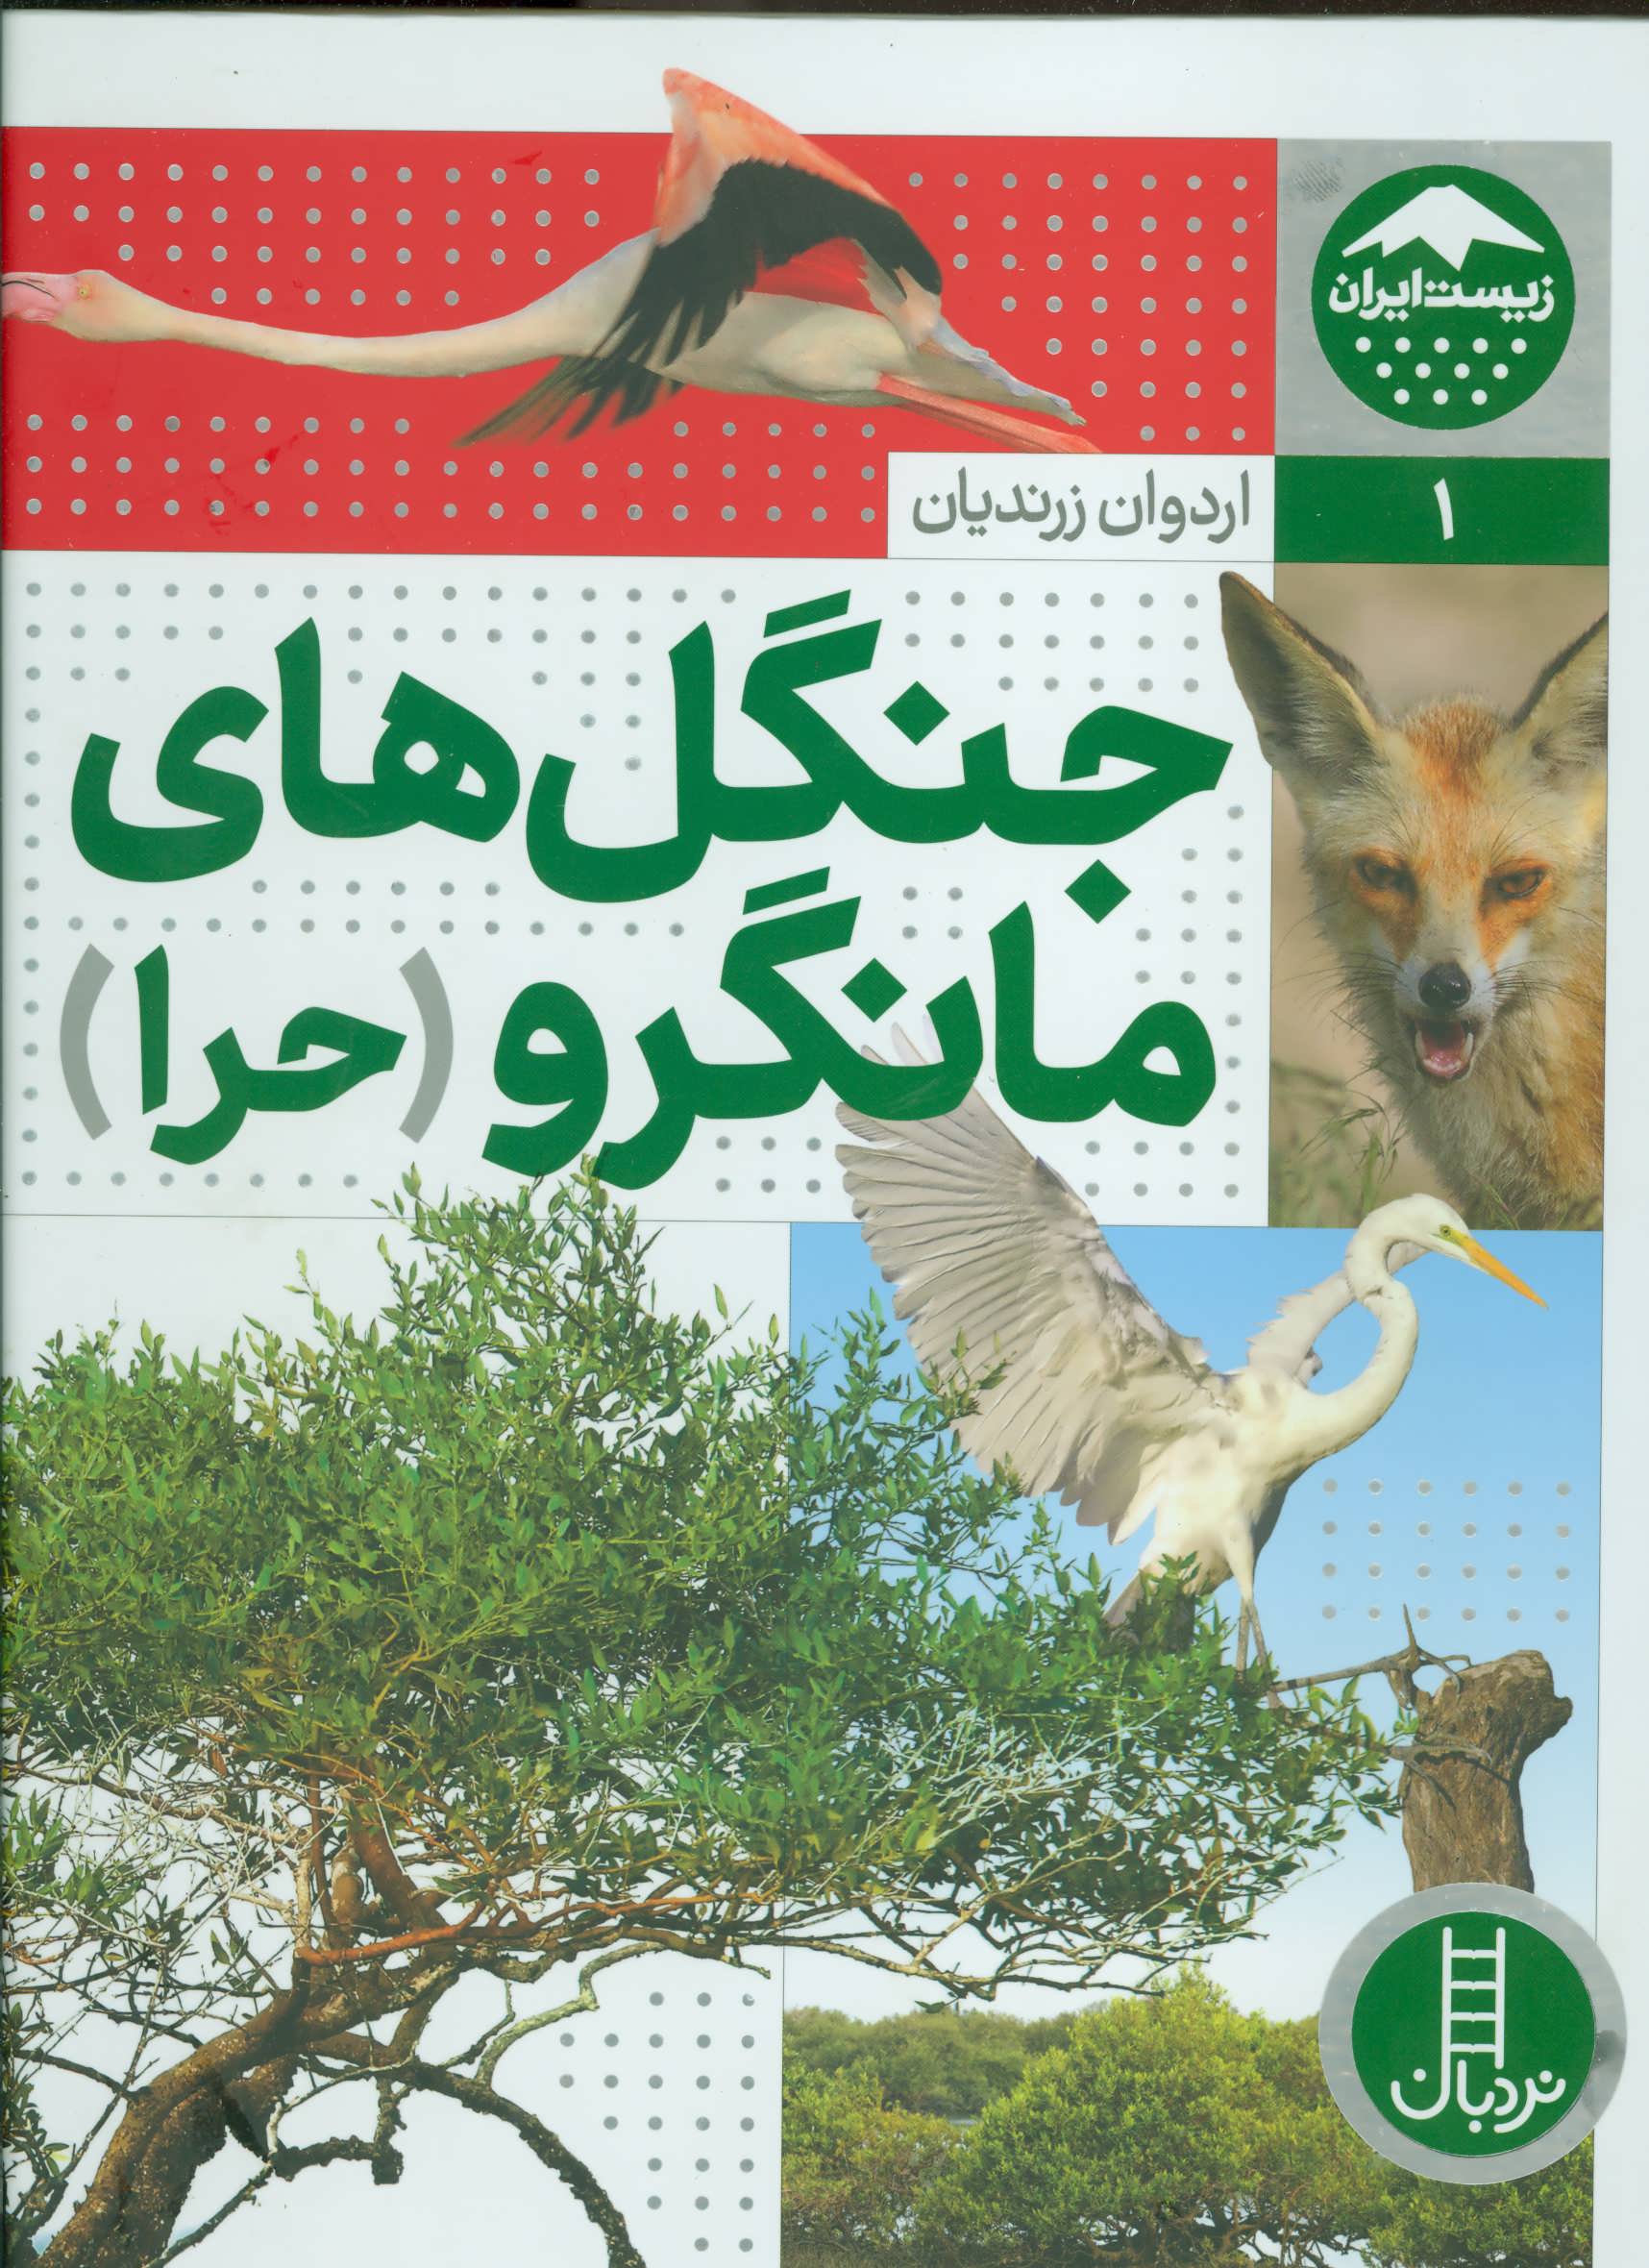 جنگل های مانگرو (حرا), زیست ایران, 1